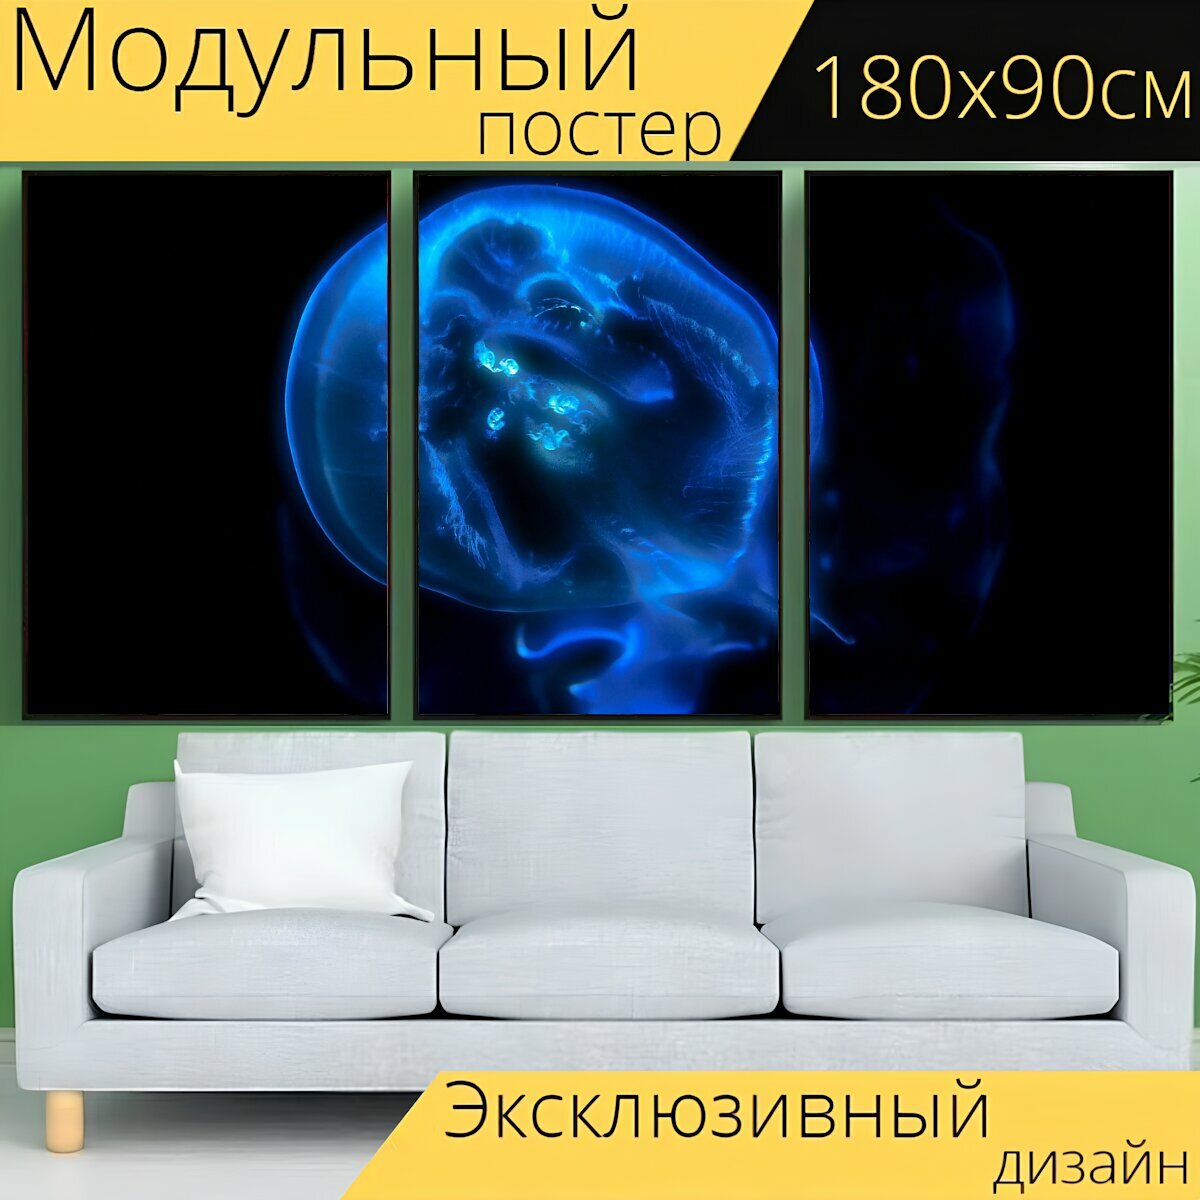 Модульный постер "Медуза, животное, подводный" 180 x 90 см. для интерьера